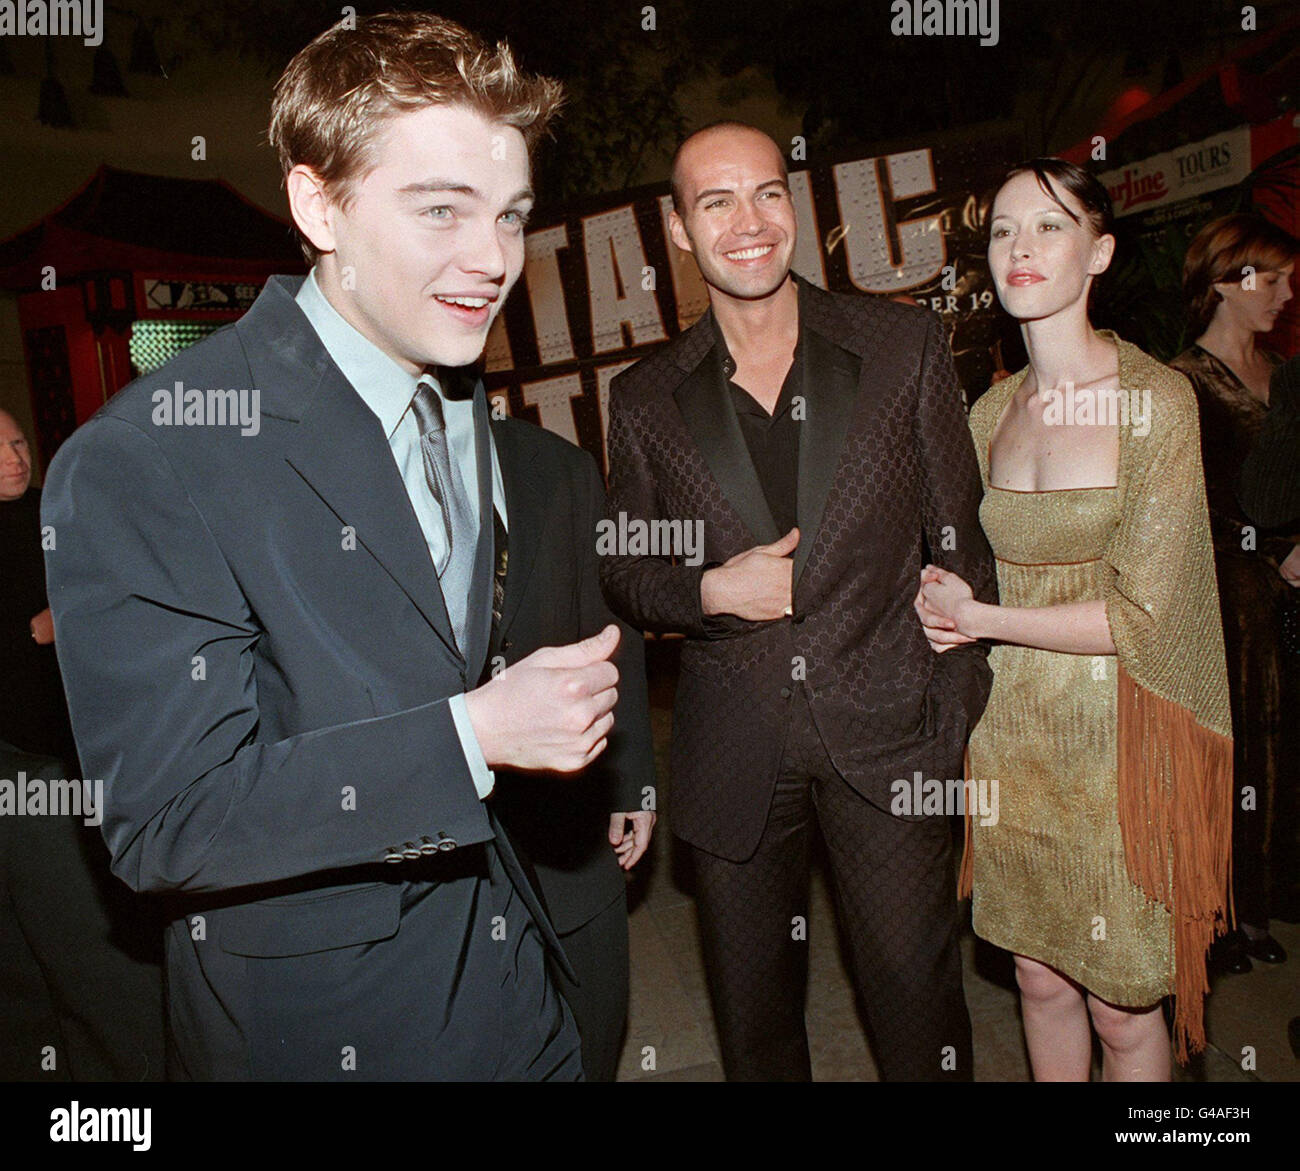 Die Stars des Films 'Titanic' Leonardo DiCaprio (L) und Billy Zane (C) kommen in Hollywood, Kalifornien, an. Zane wird von seiner Freundin Jessica Murphy begleitet. Stockfoto